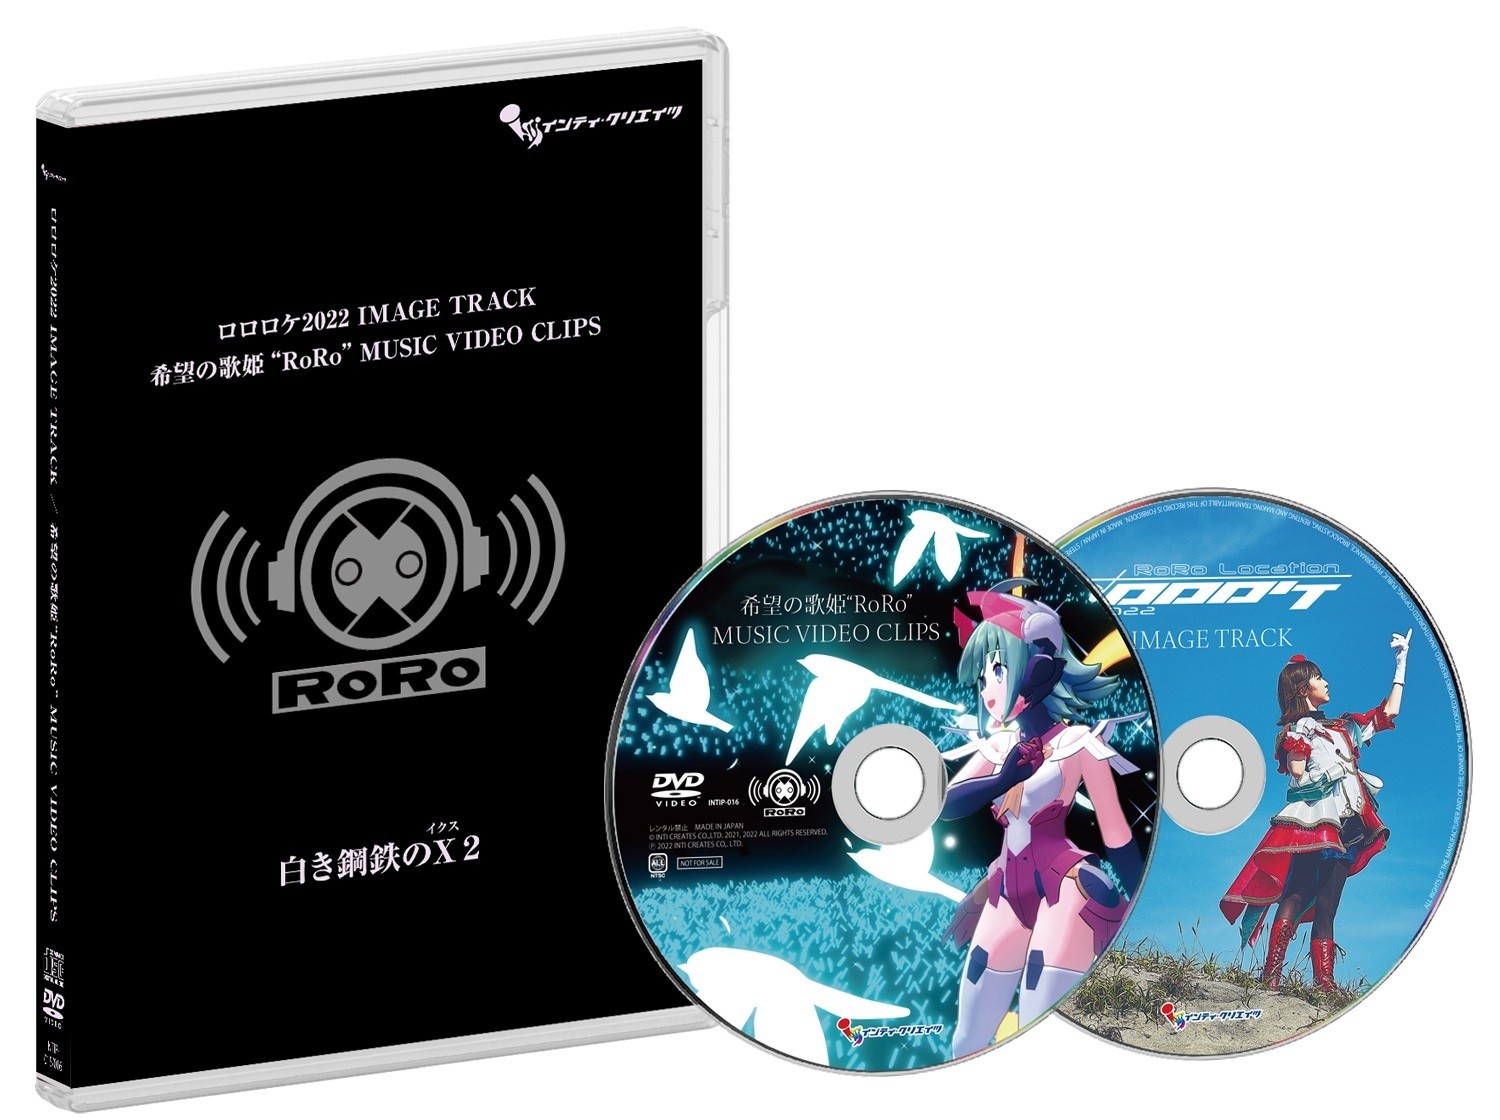 《银白钢铁 X 2》公布盒装限定版最终样式、预约特典完稿插画及 RoRo 演唱会资讯